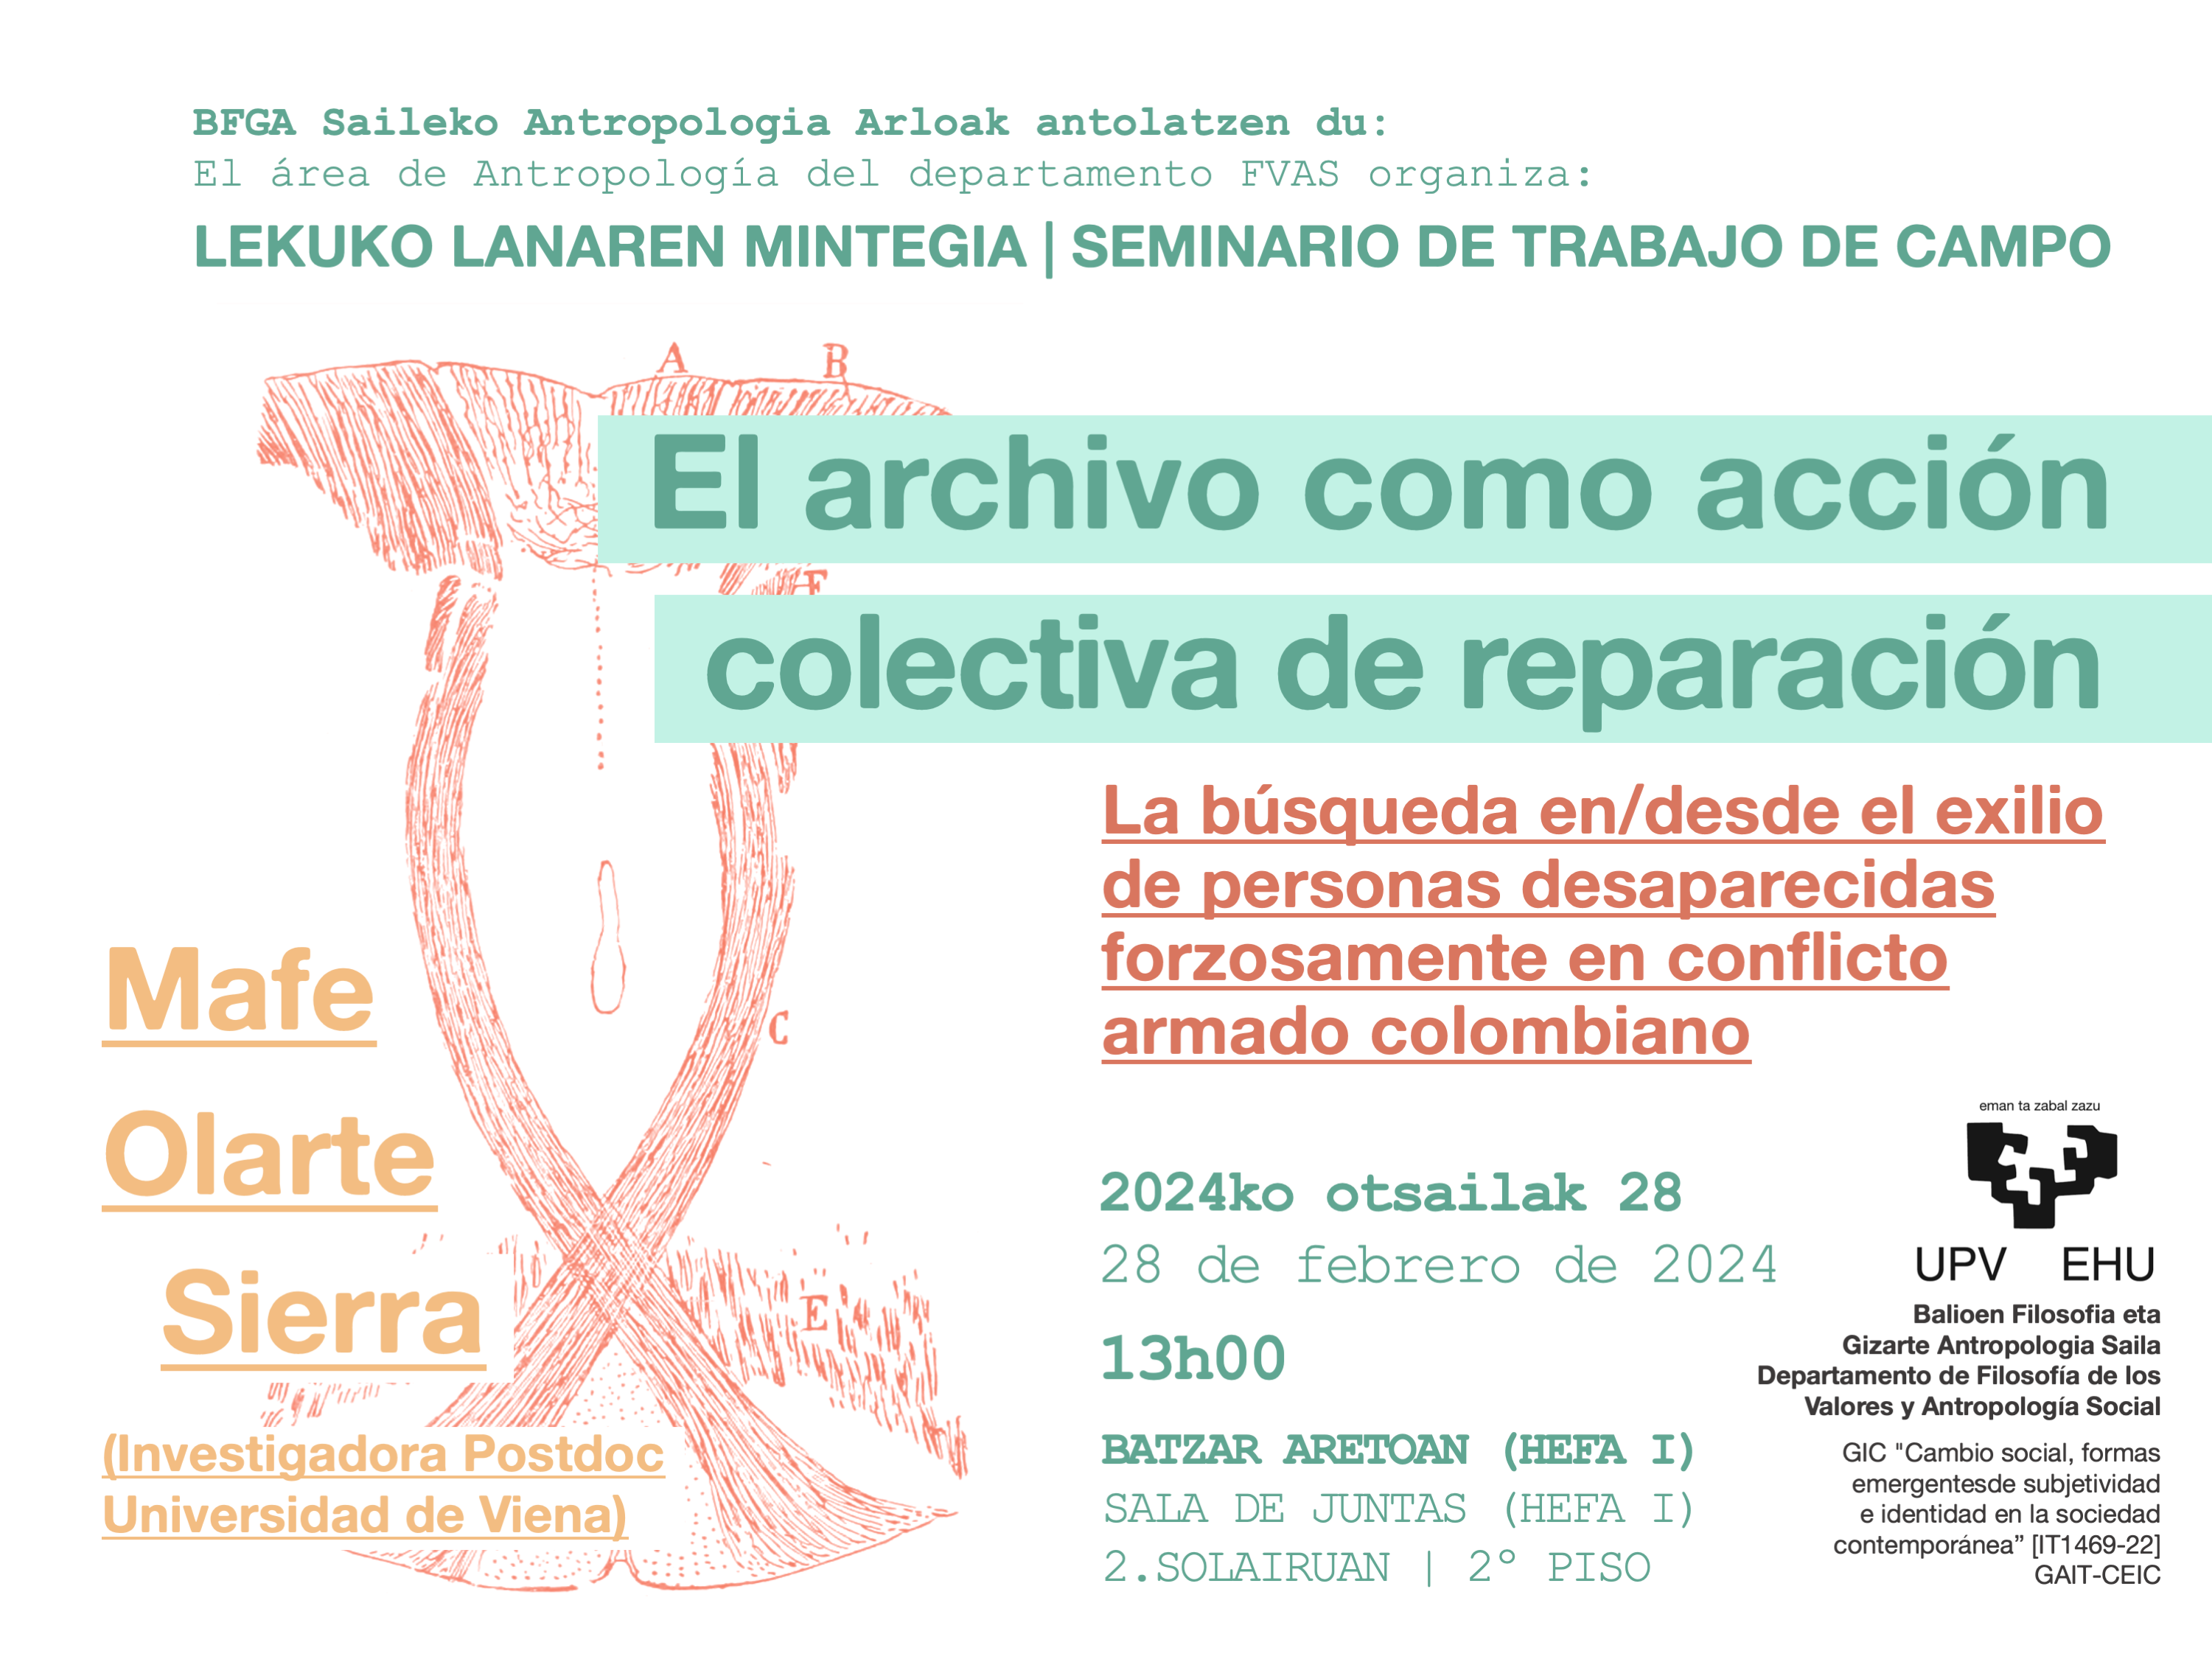 El archivo como acción colectiva de reparación. La búsqueda en/desde el exilio de personas desaparecidas forzosamente en conflicto armado colombiano